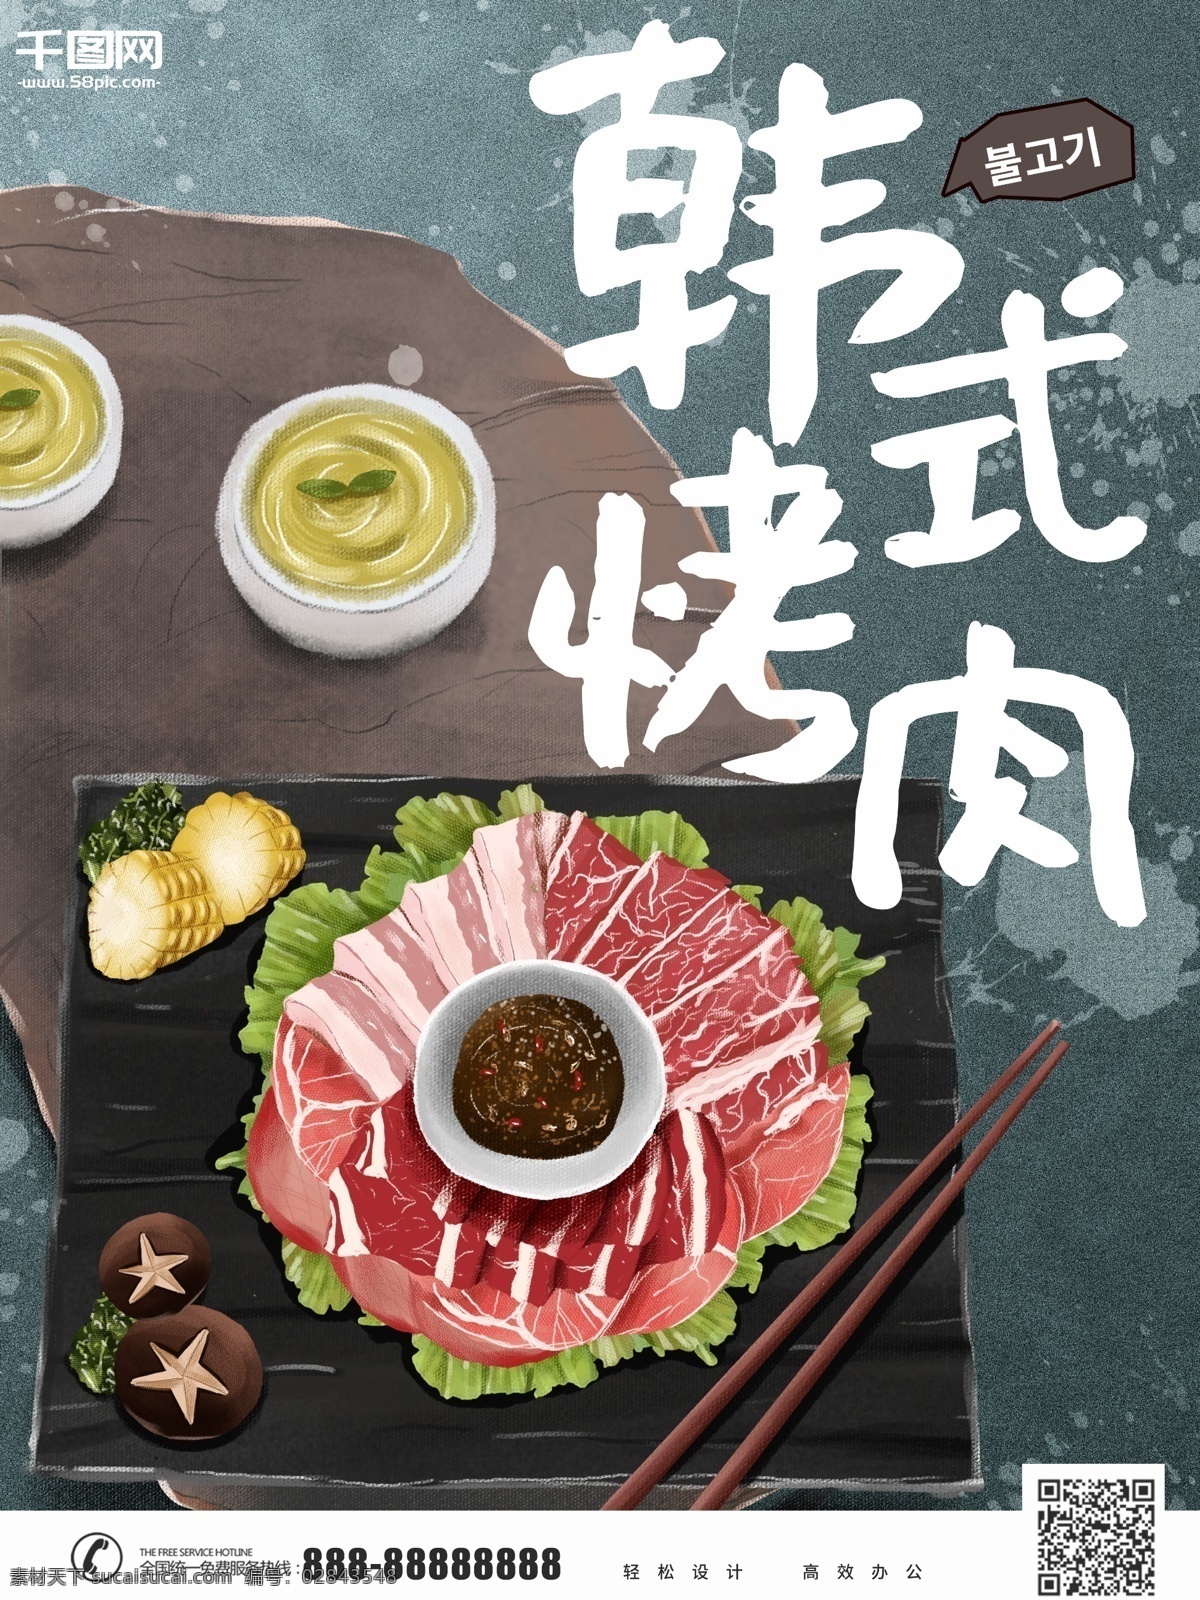 原创 手绘 韩式 烤肉 插画 美食 海报 卡通 宣传 韩式烤肉 韩国烤肉 活动 韩系